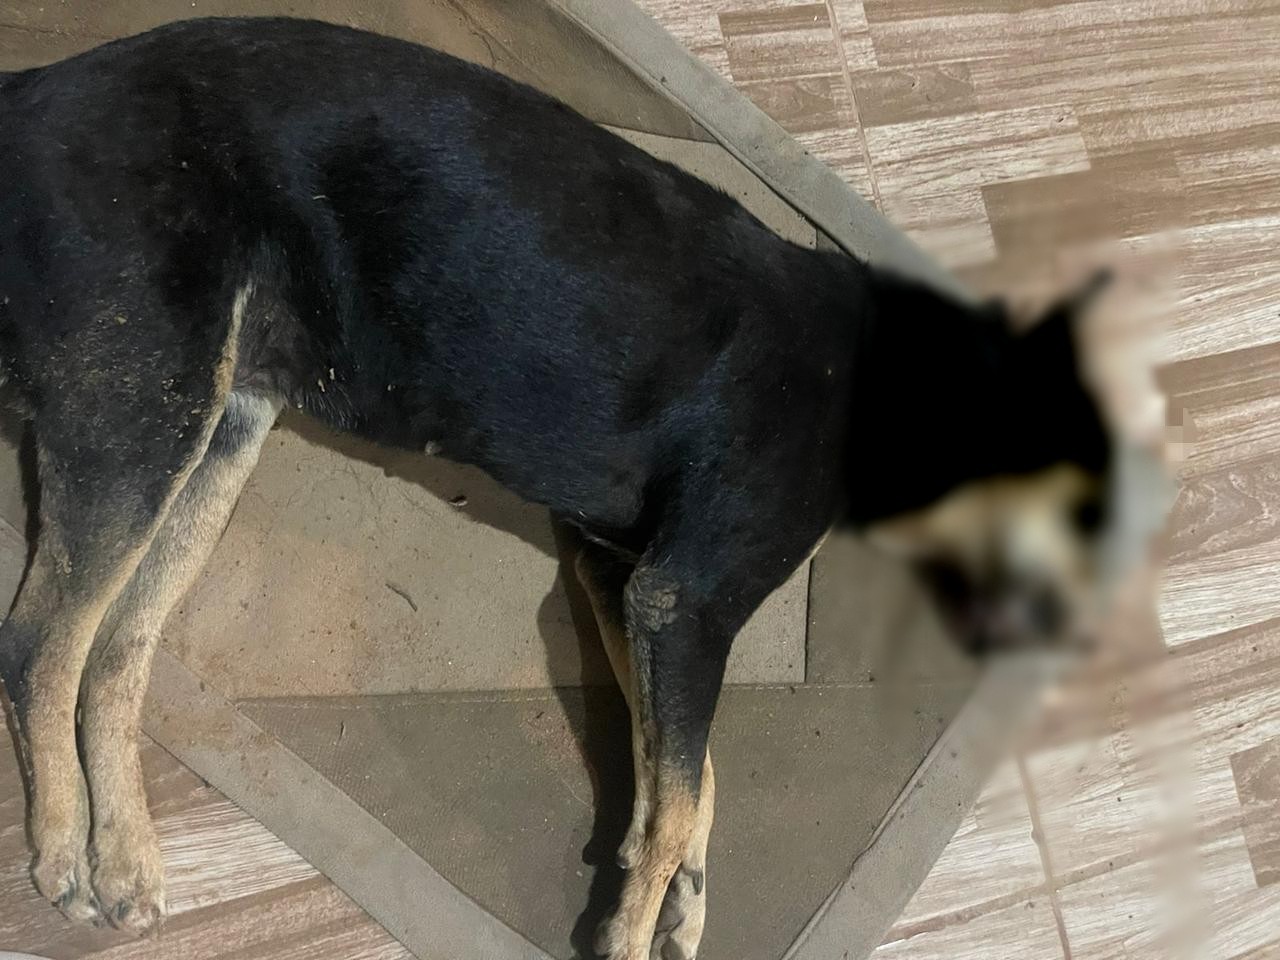 Leiturista de água mata cadela a pauladas em MS; polícia investiga o caso